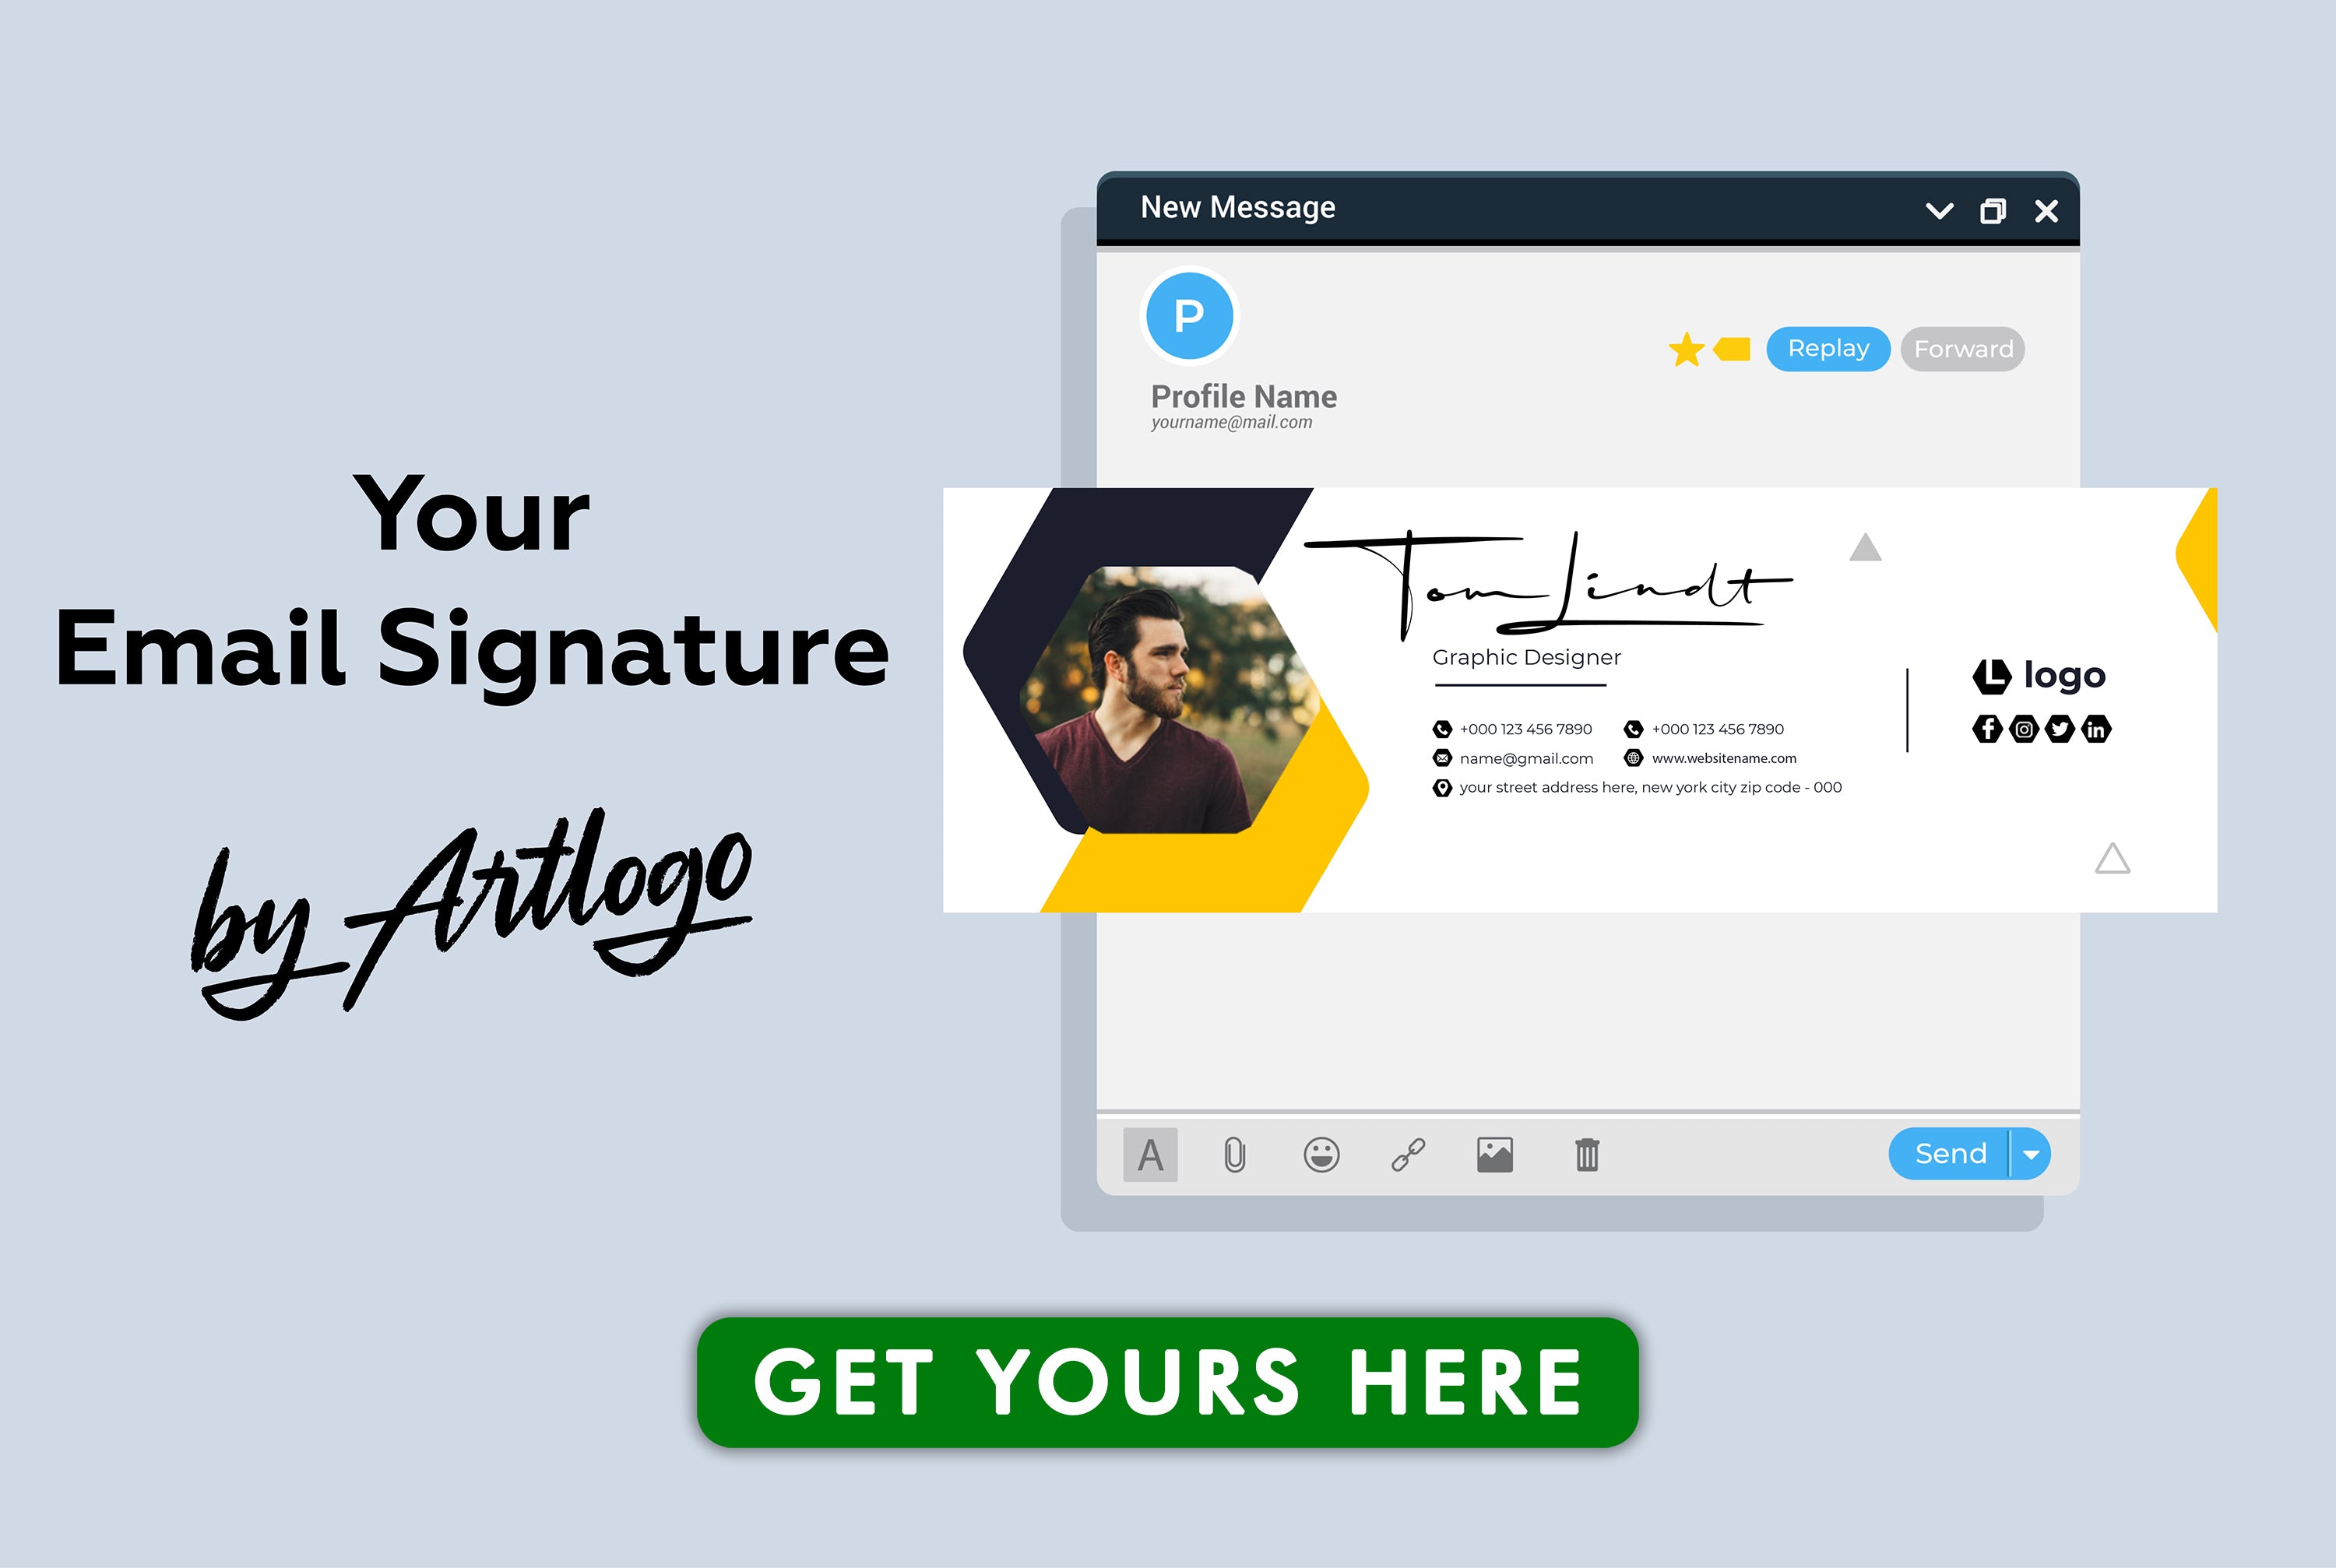 Apprenez à créer une signature d'e-mail professionnelle qui reflète votre professionnalisme et laisse une impression durable. Pour en savoir plus, cliquez ici !